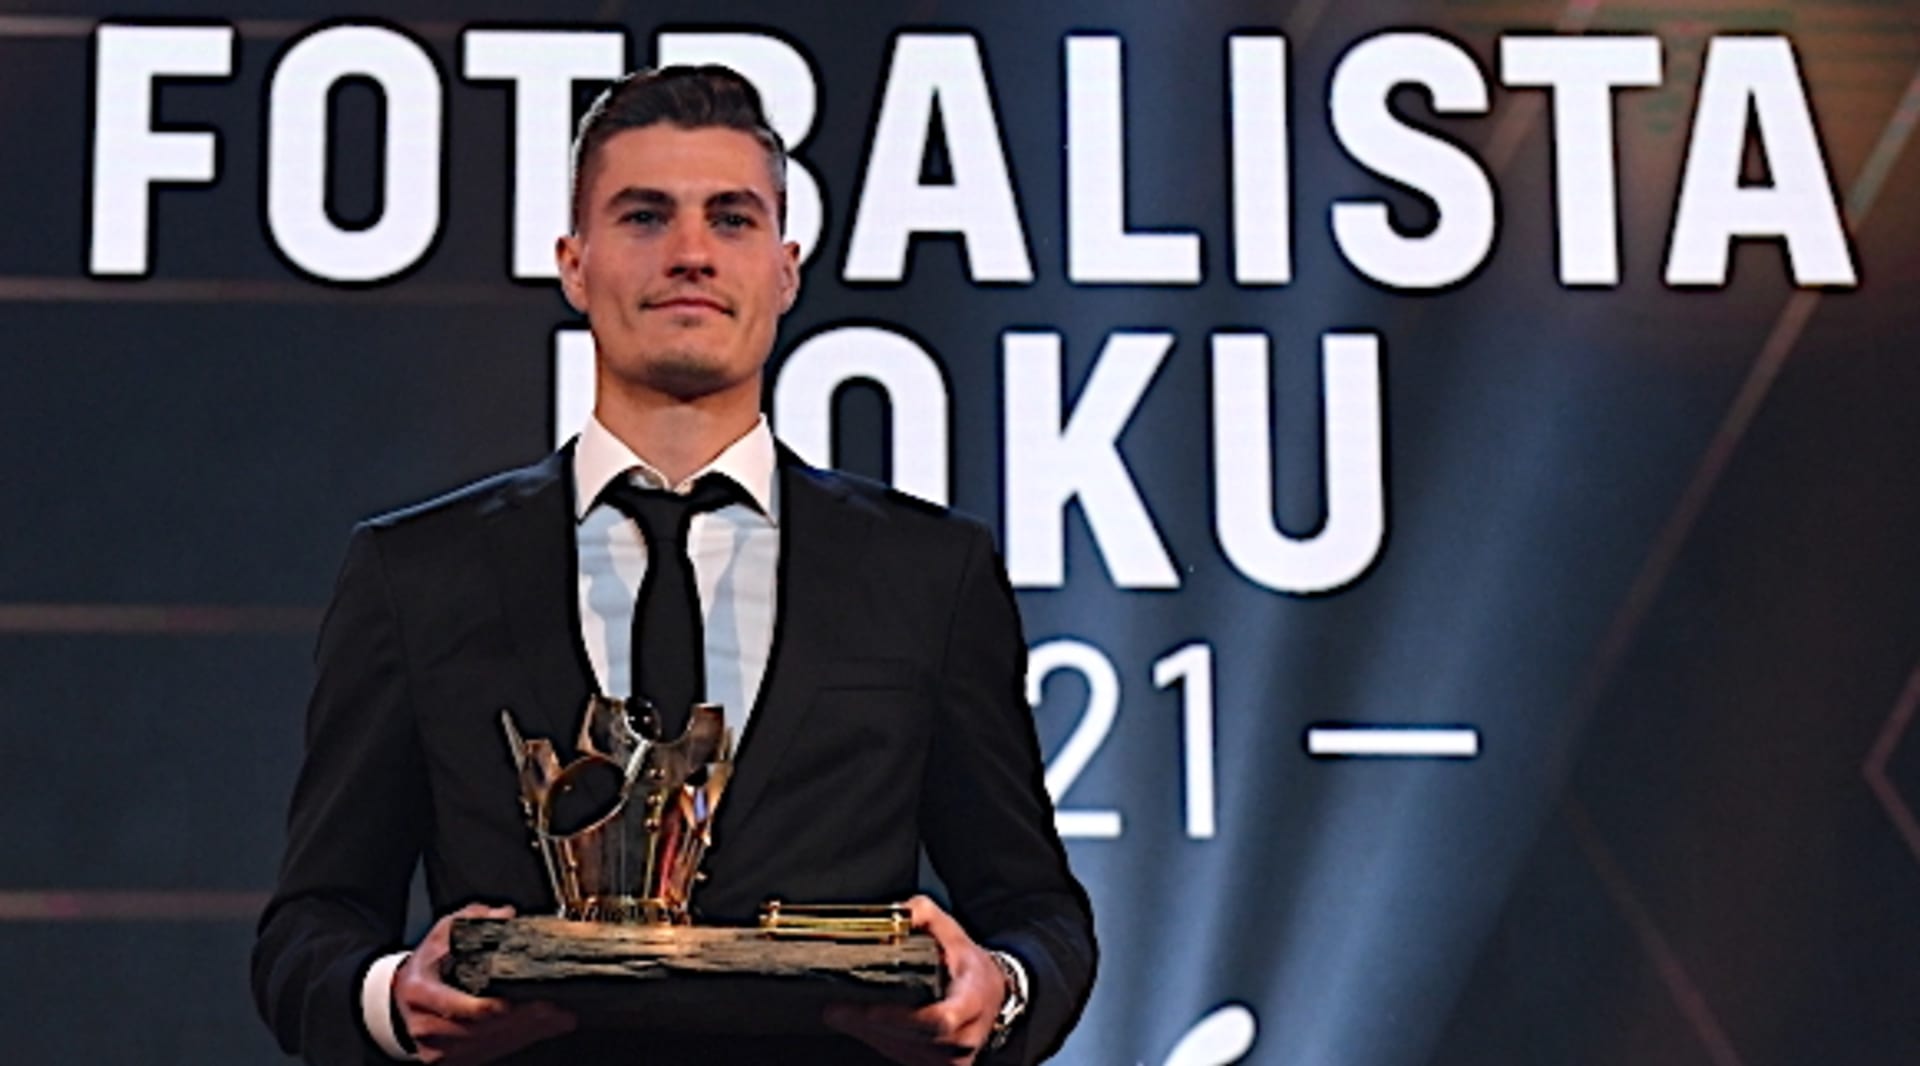 Patrik Schick poprvé v kariéře vyhrál anketu o českého fotbalistu roku. Útočník Leverkusenu porazil vítěze posledních dvou ročníků Tomáše Součka.